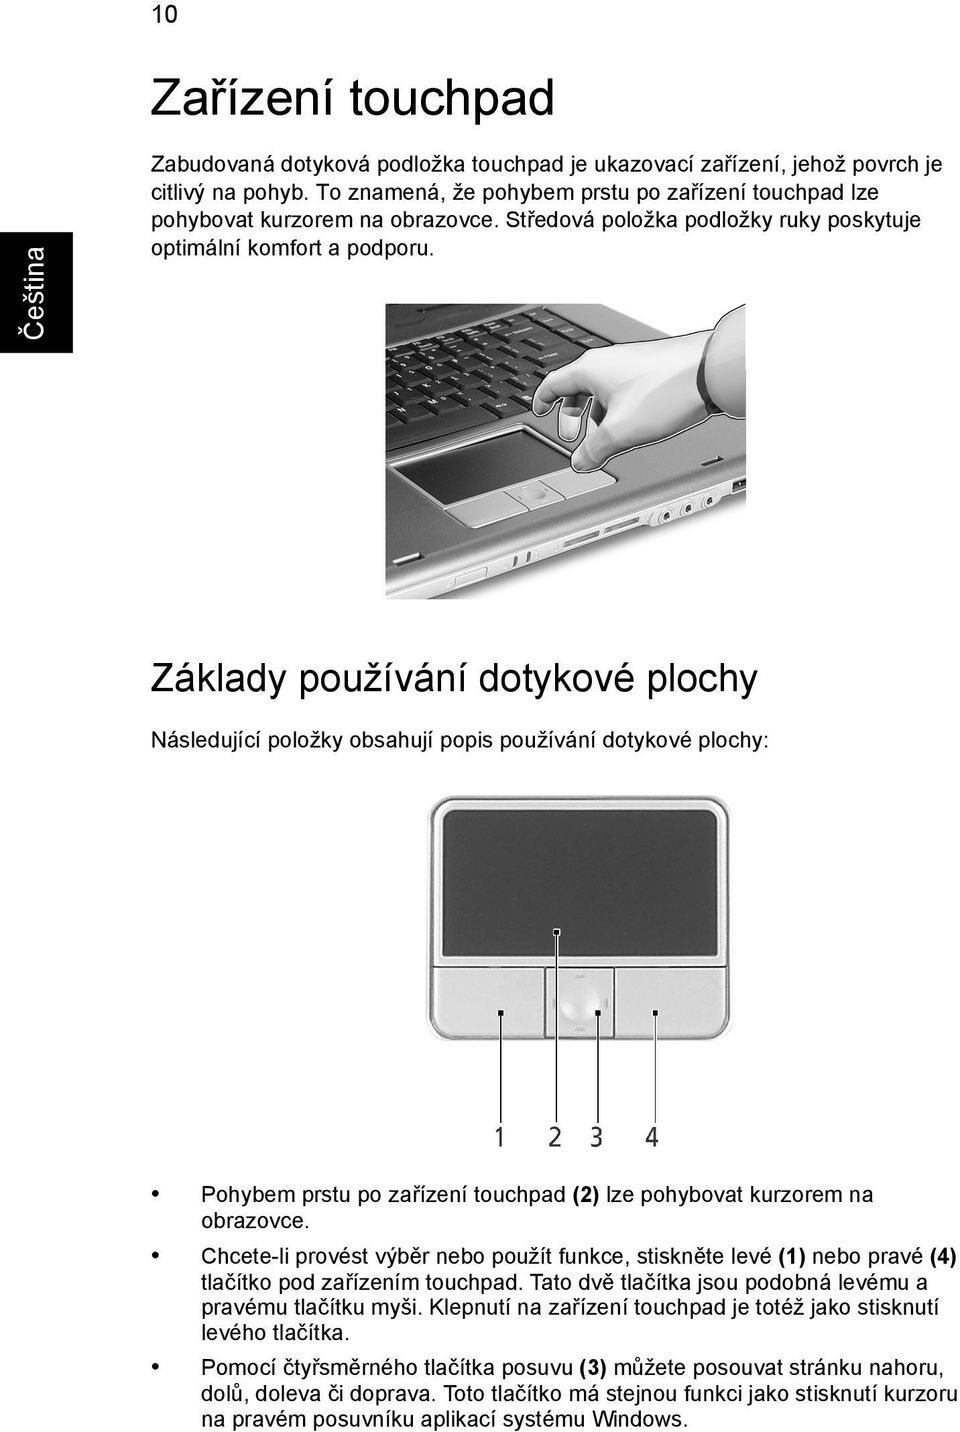 Základy používání dotykové plochy Následující položky obsahují popis používání dotykové plochy: Pohybem prstu po zařízení touchpad (2) lze pohybovat kurzorem na obrazovce.